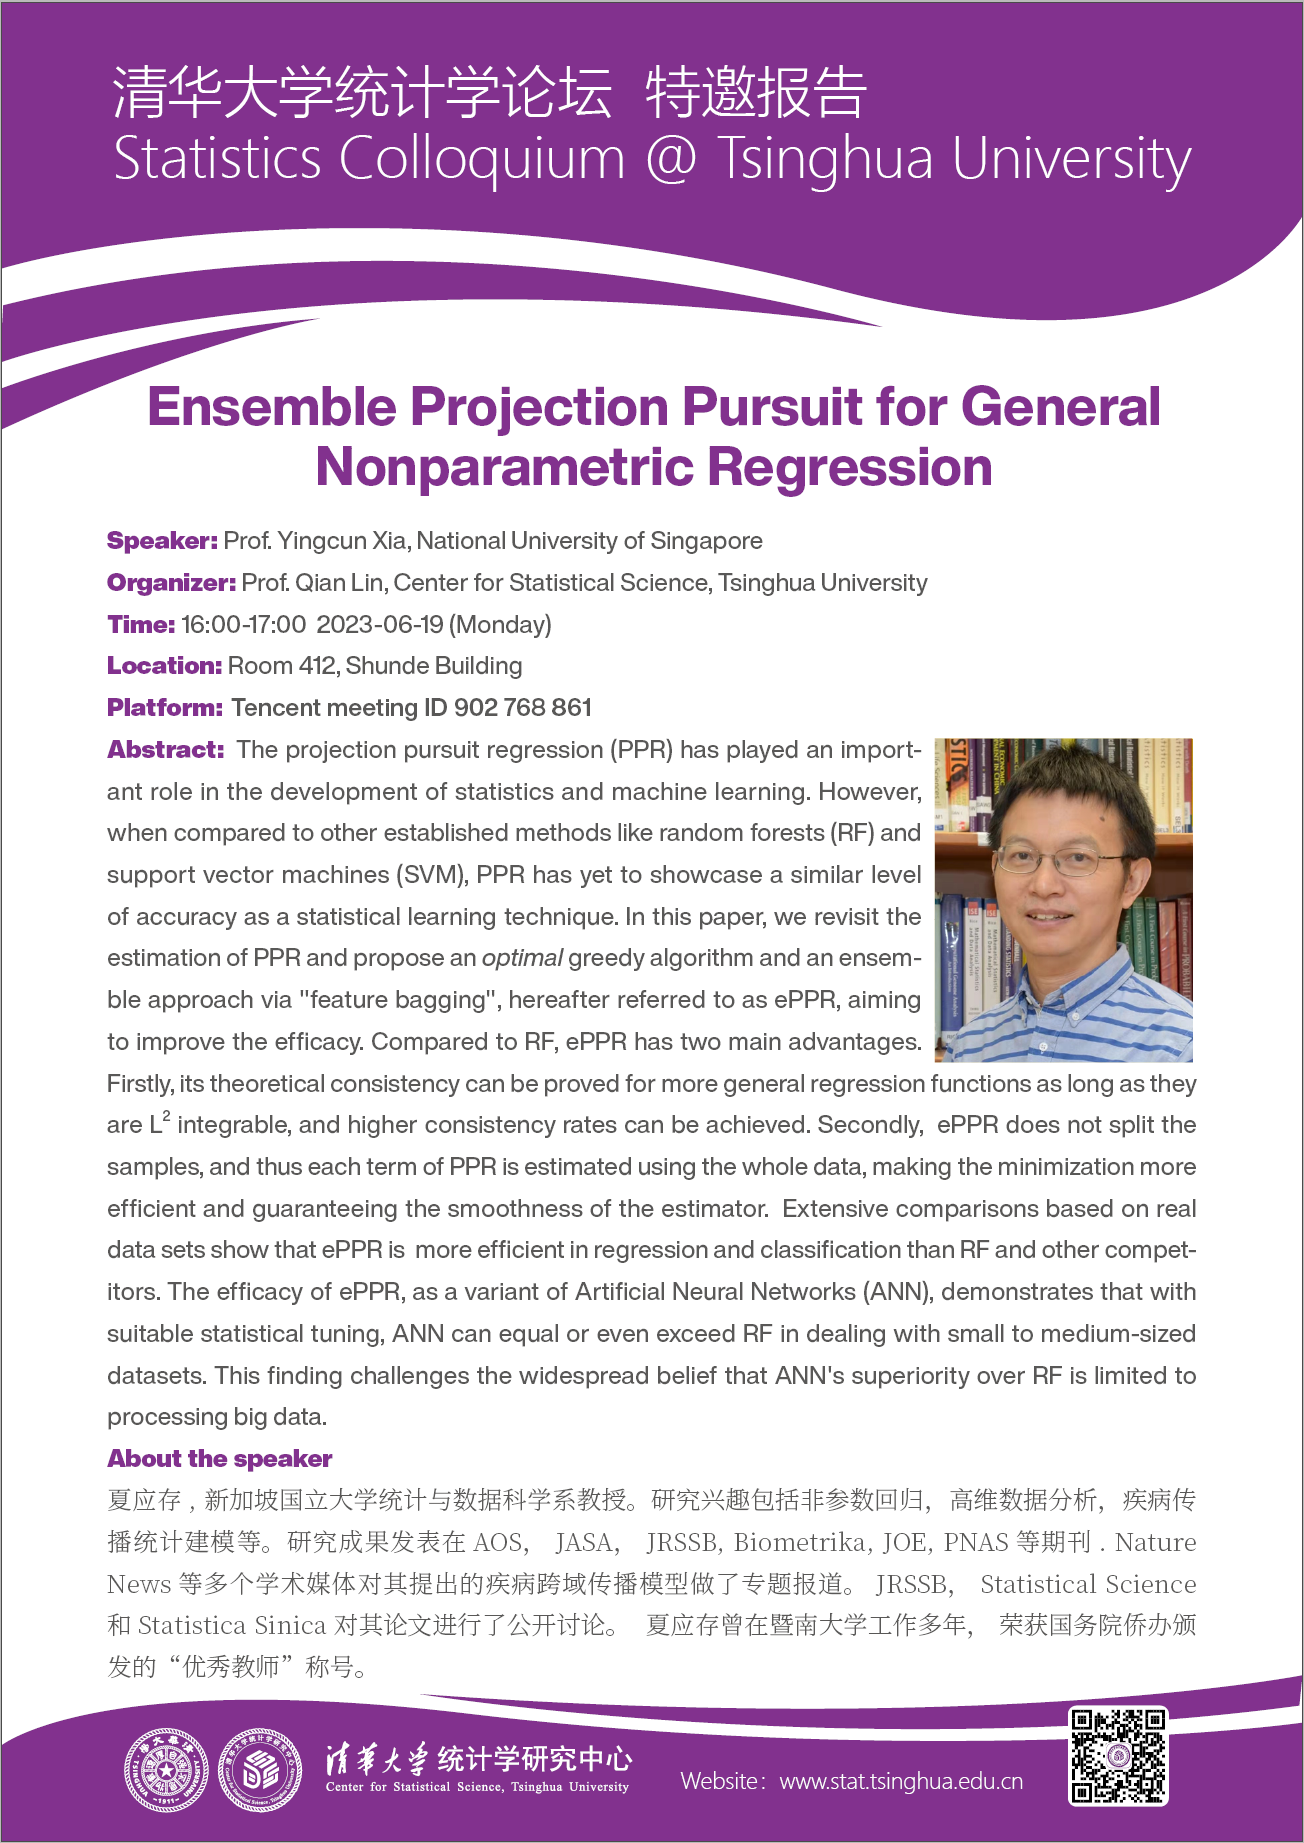 【统计学论坛】Ensemble Projection Pursuit for General Nonparametric Regression